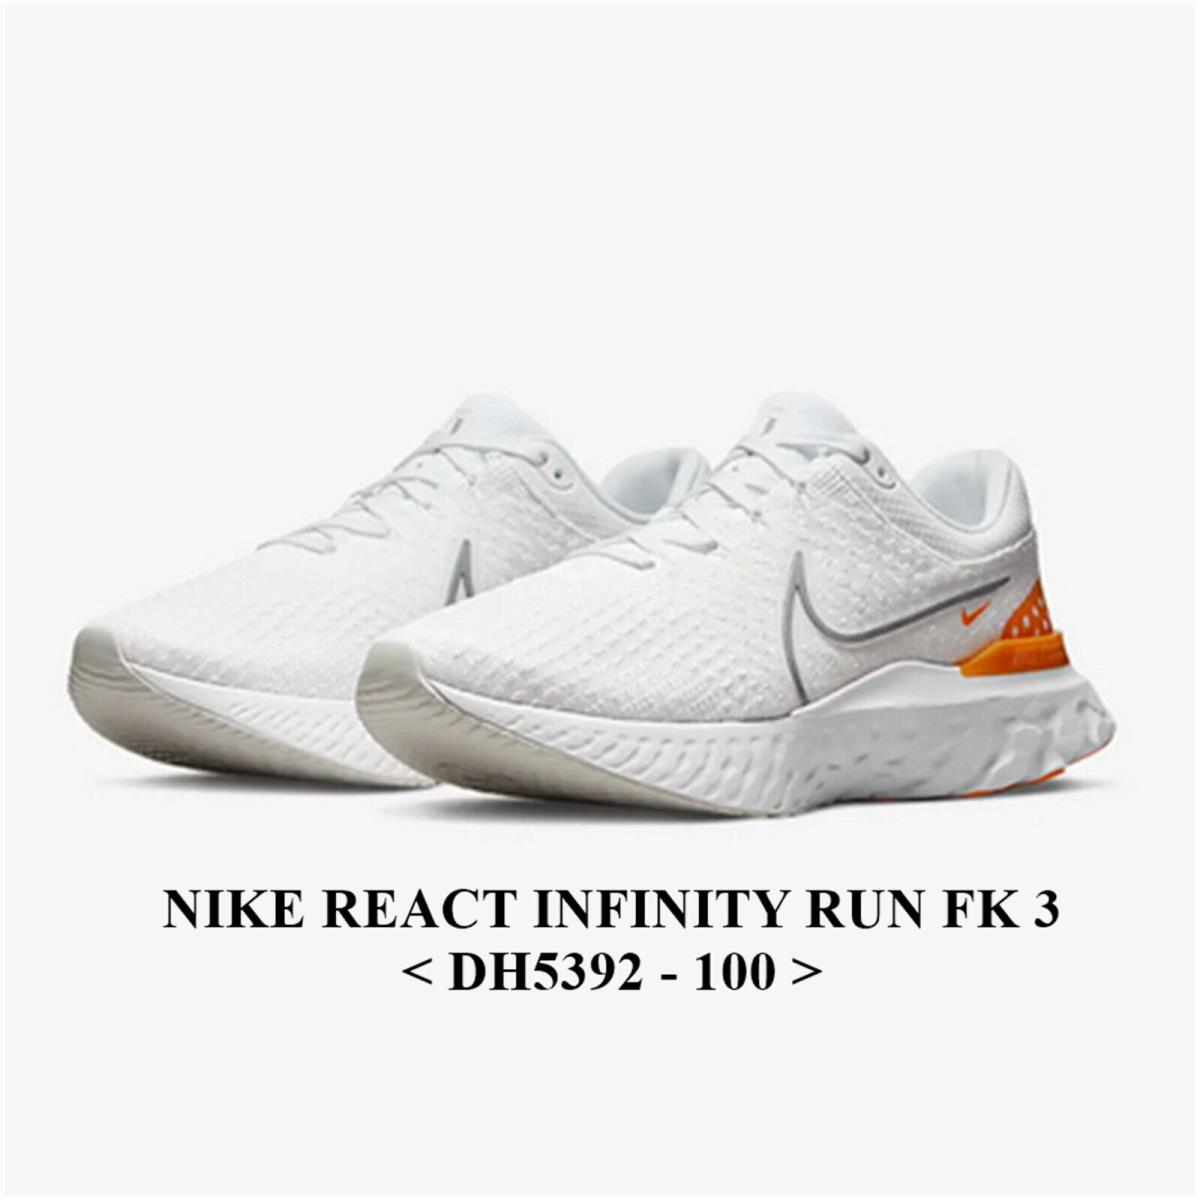 Nike React Infinity Run FK 3 DH5392-100 Men Running Shoes